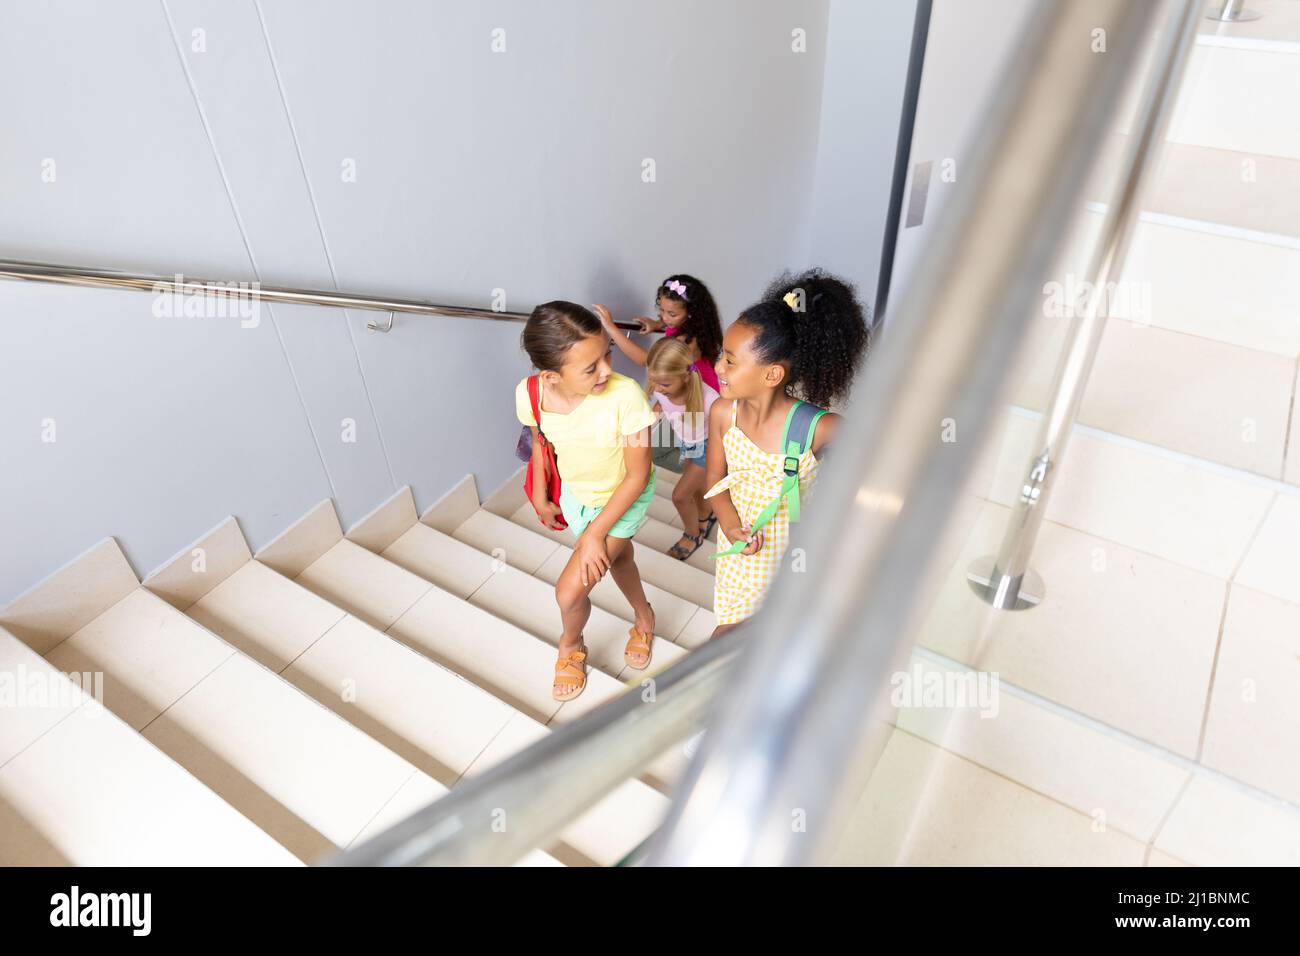 Vue en grand angle des élèves multiraciaux de l'élémentaire grimpant des marches dans le bâtiment de l'école Banque D'Images